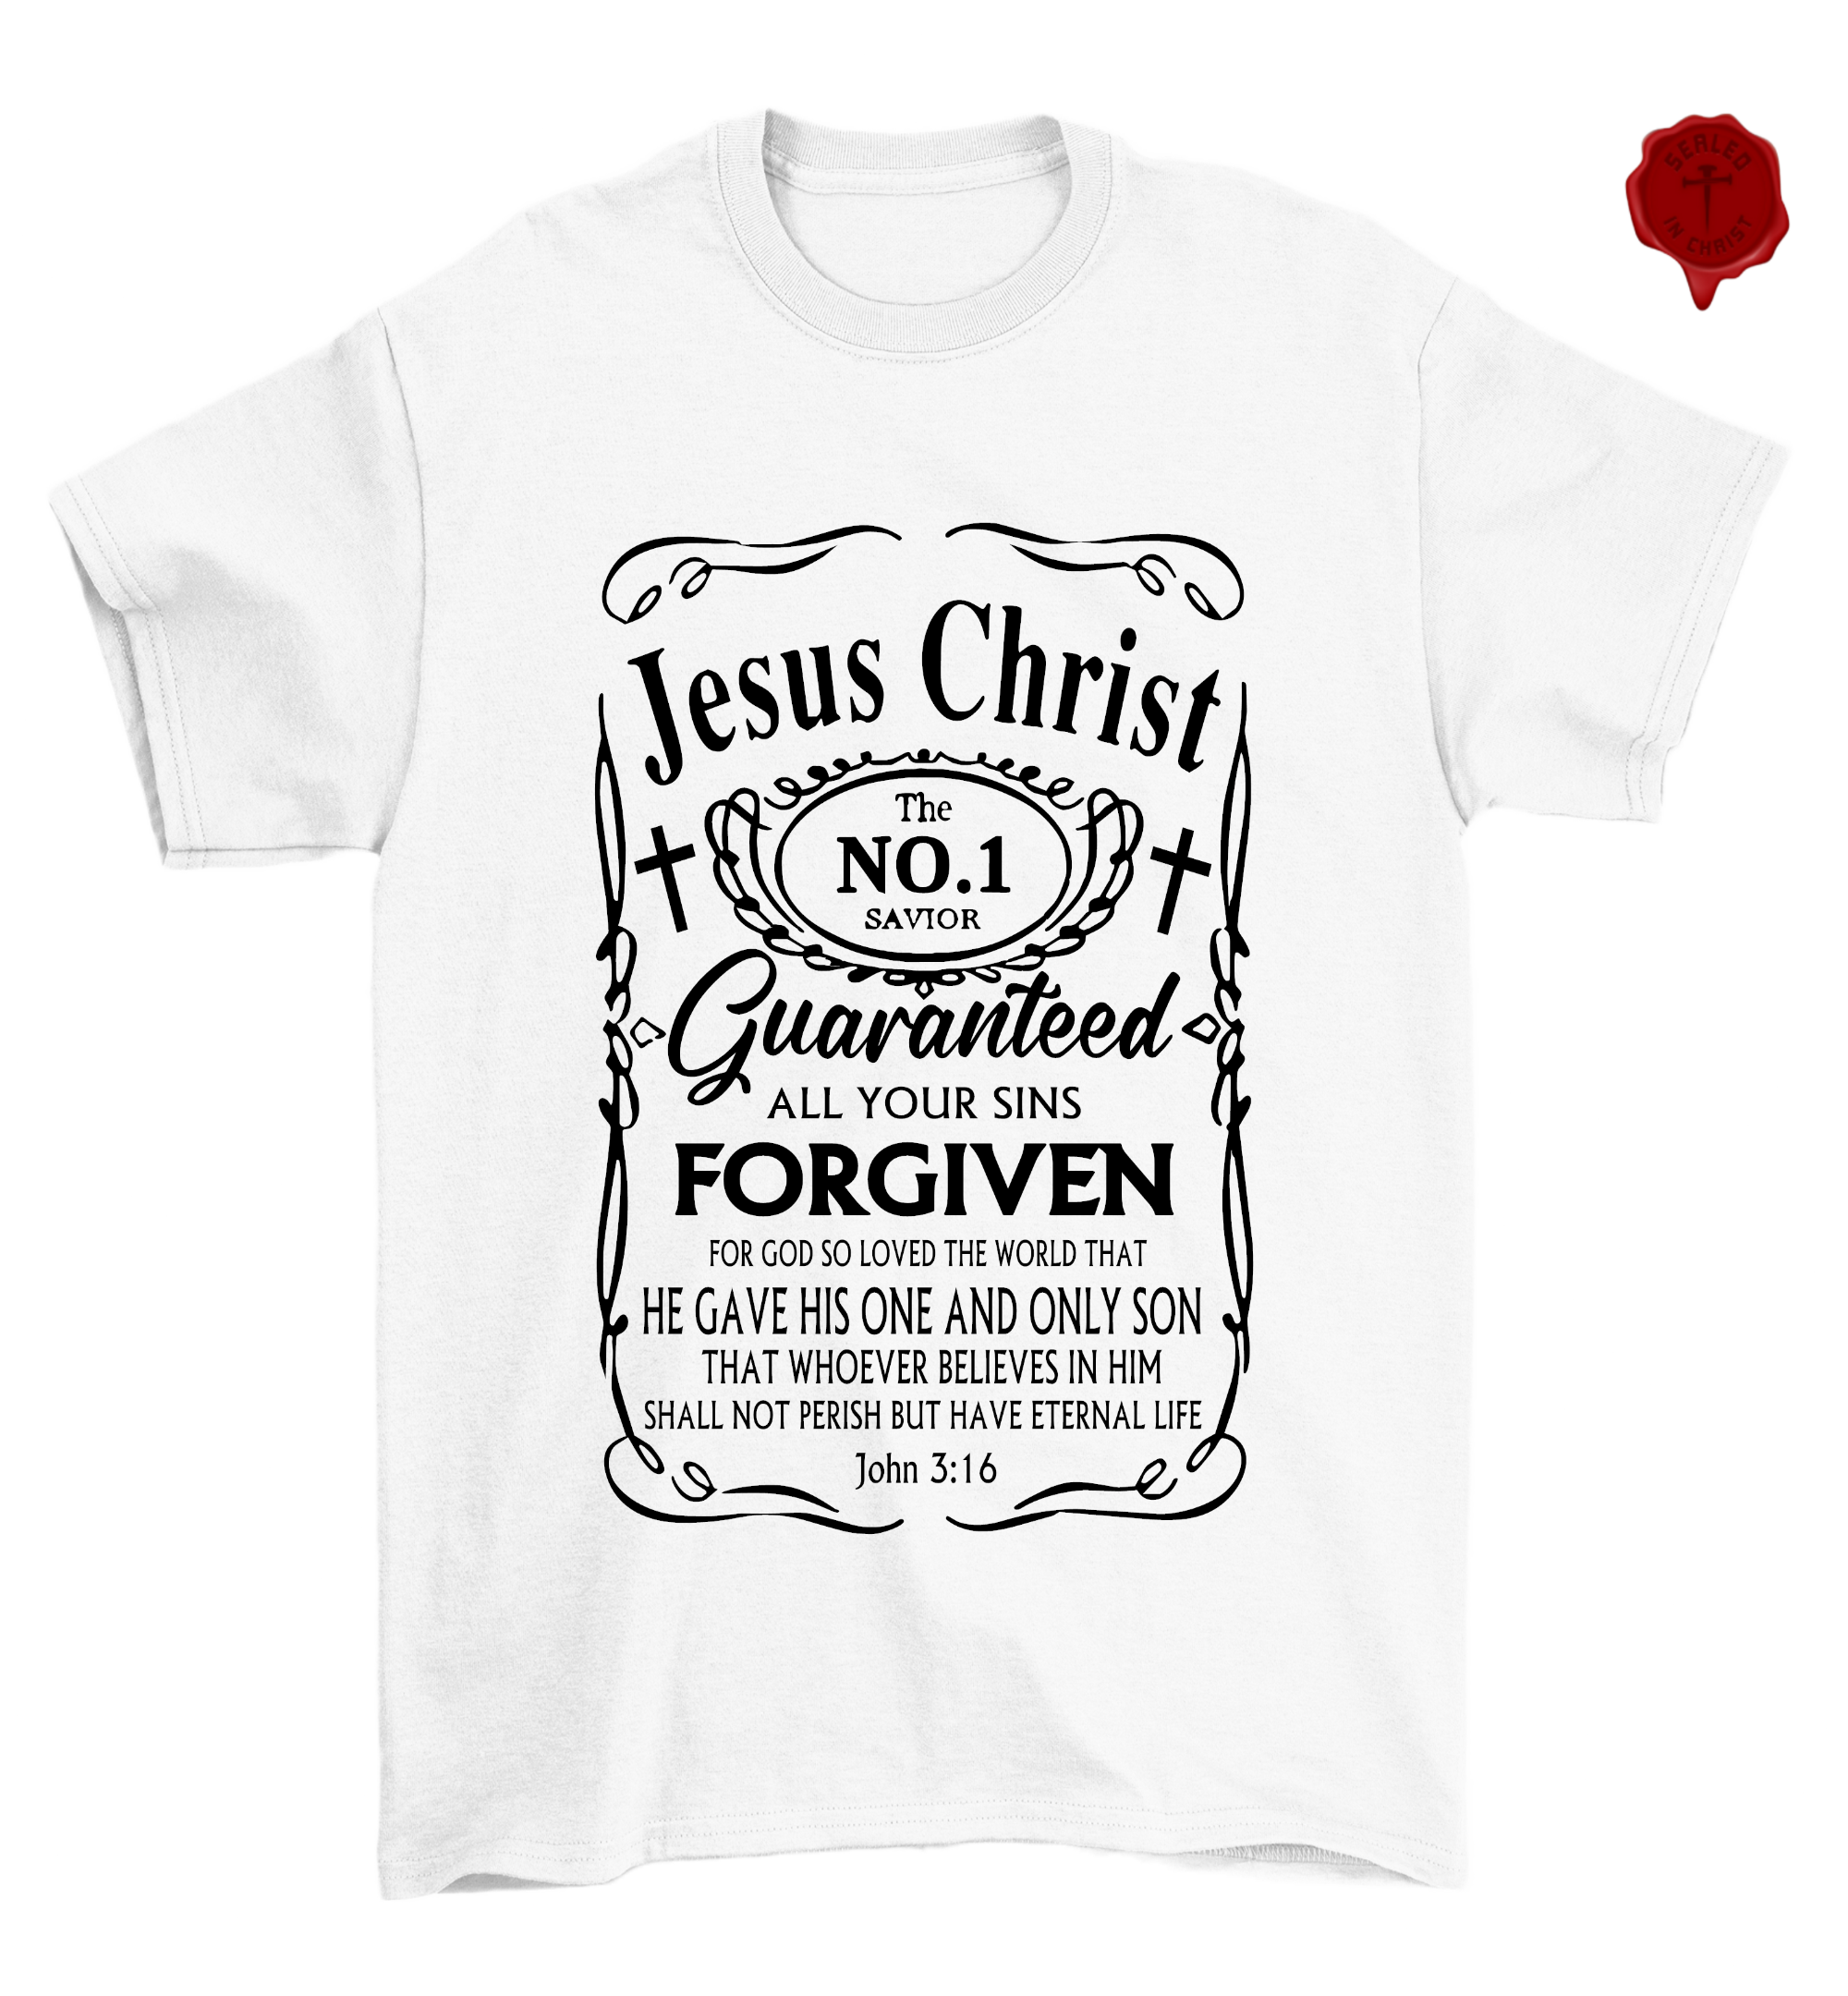 Jesus Christ #1 Savior